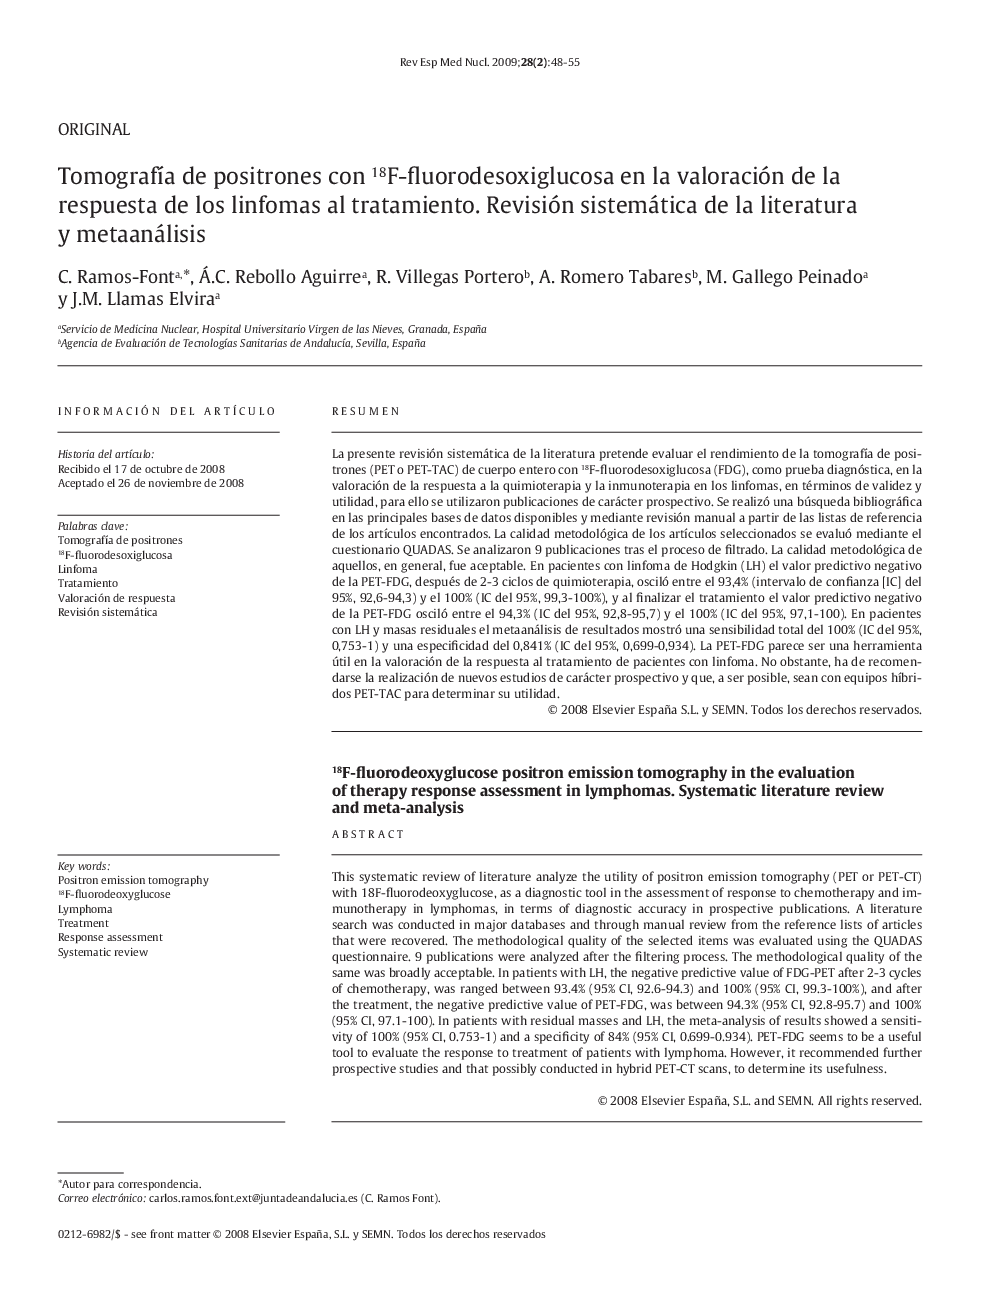 TomografÃ­a de positrones con 18F-fluorodesoxiglucosa en la valoración de la respuesta de los linfomas al tratamiento. Revisión sistemática de la literatura y metaanálisis